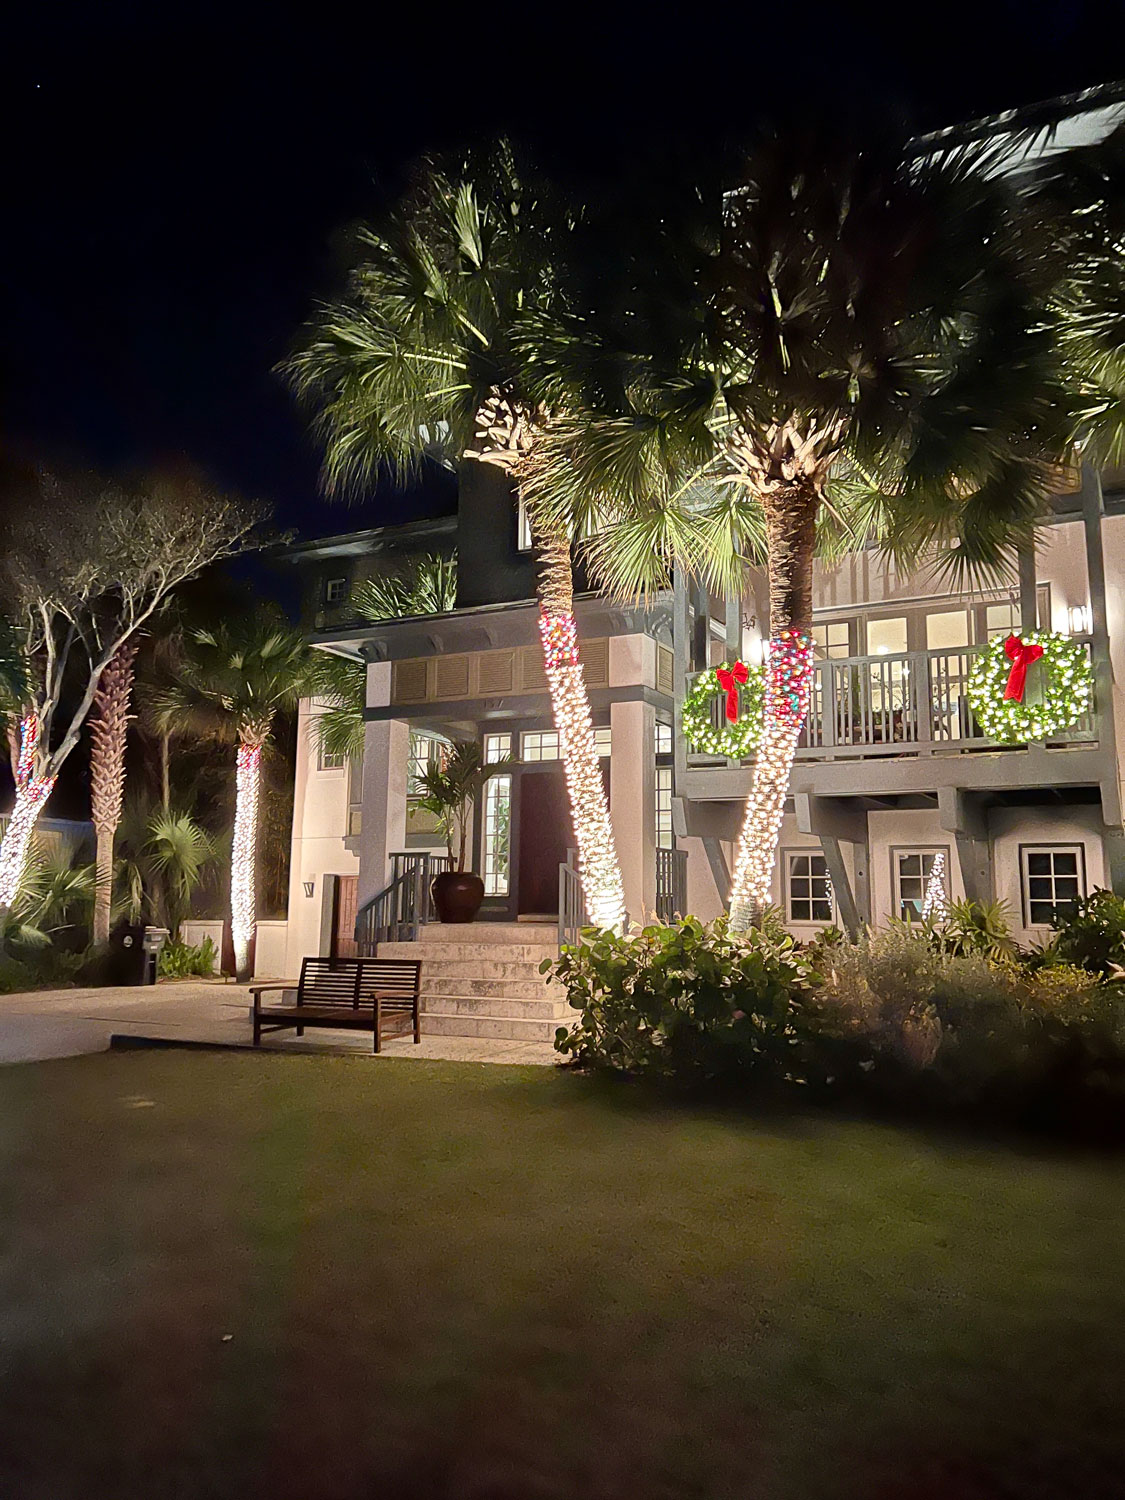 Atlantic Beach Florida home for Christmas